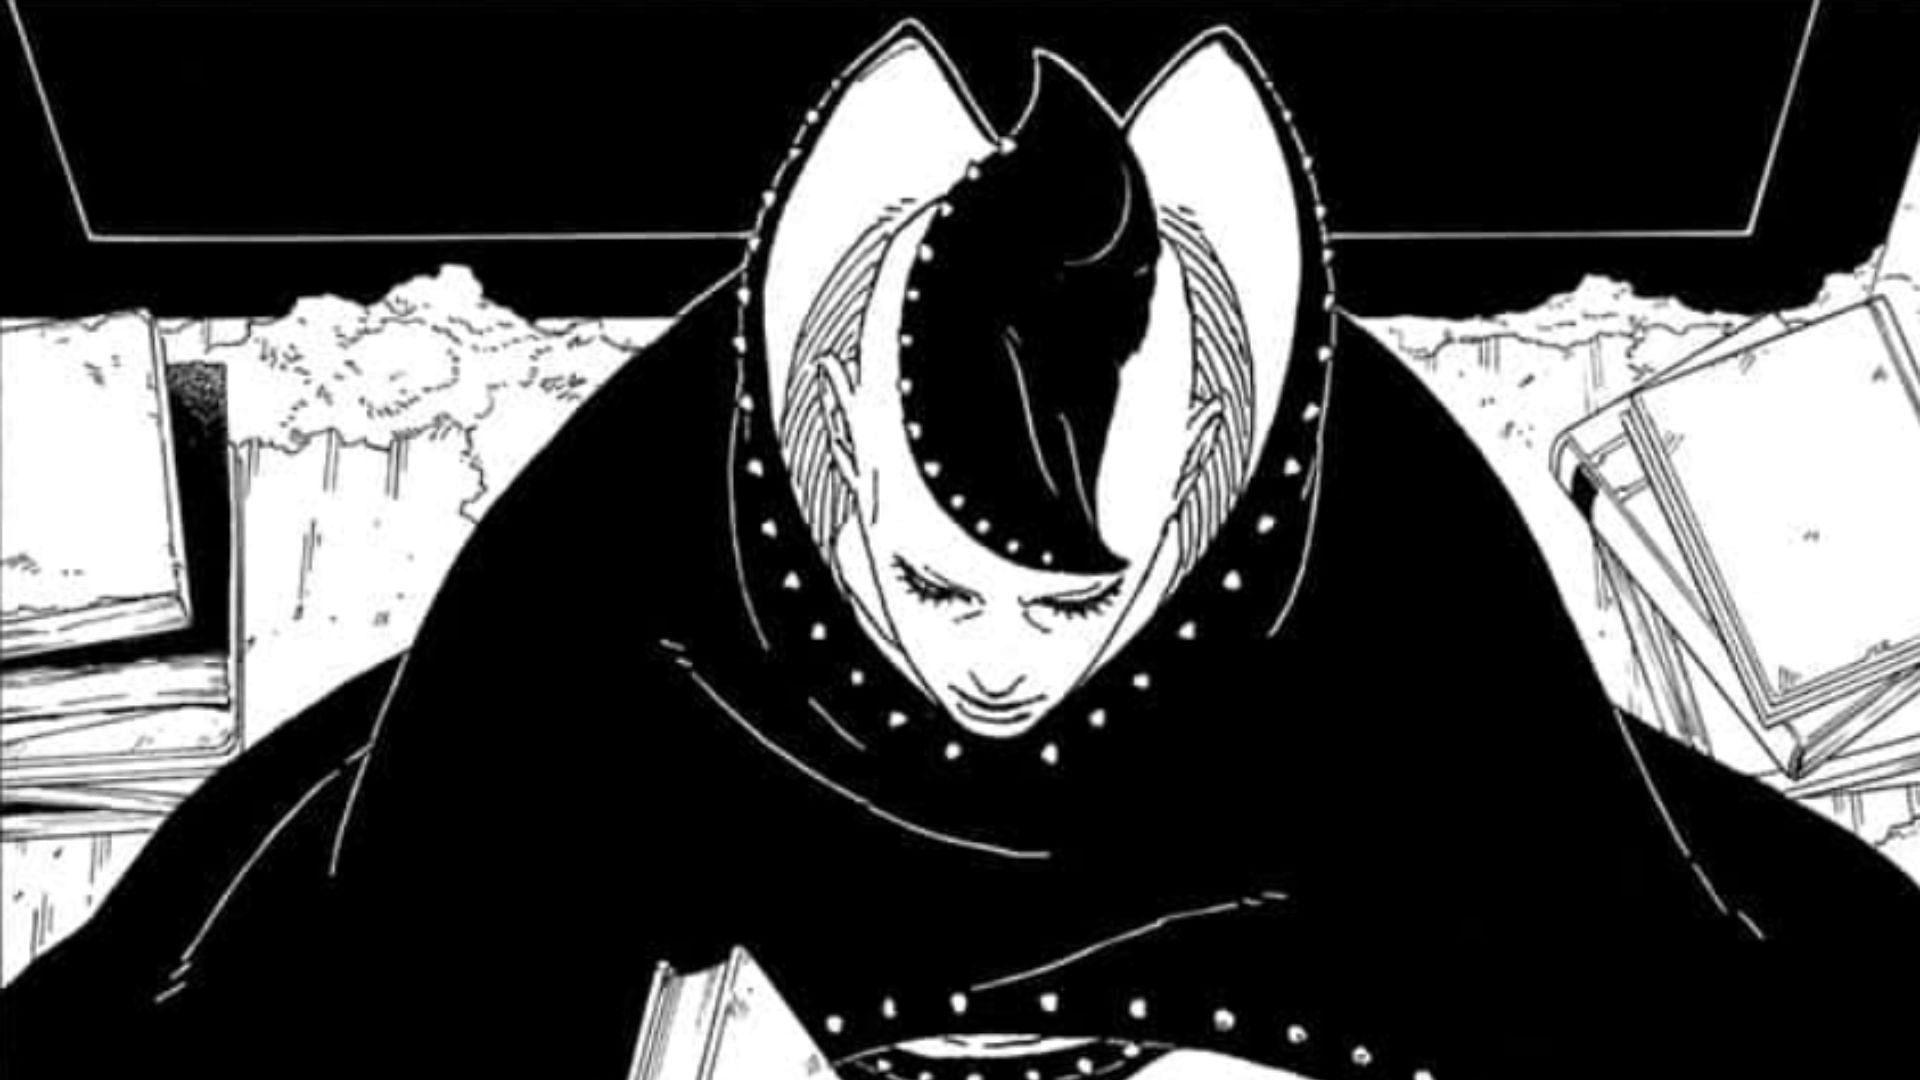 Jura as shown in the manga (Image via Shueisha)